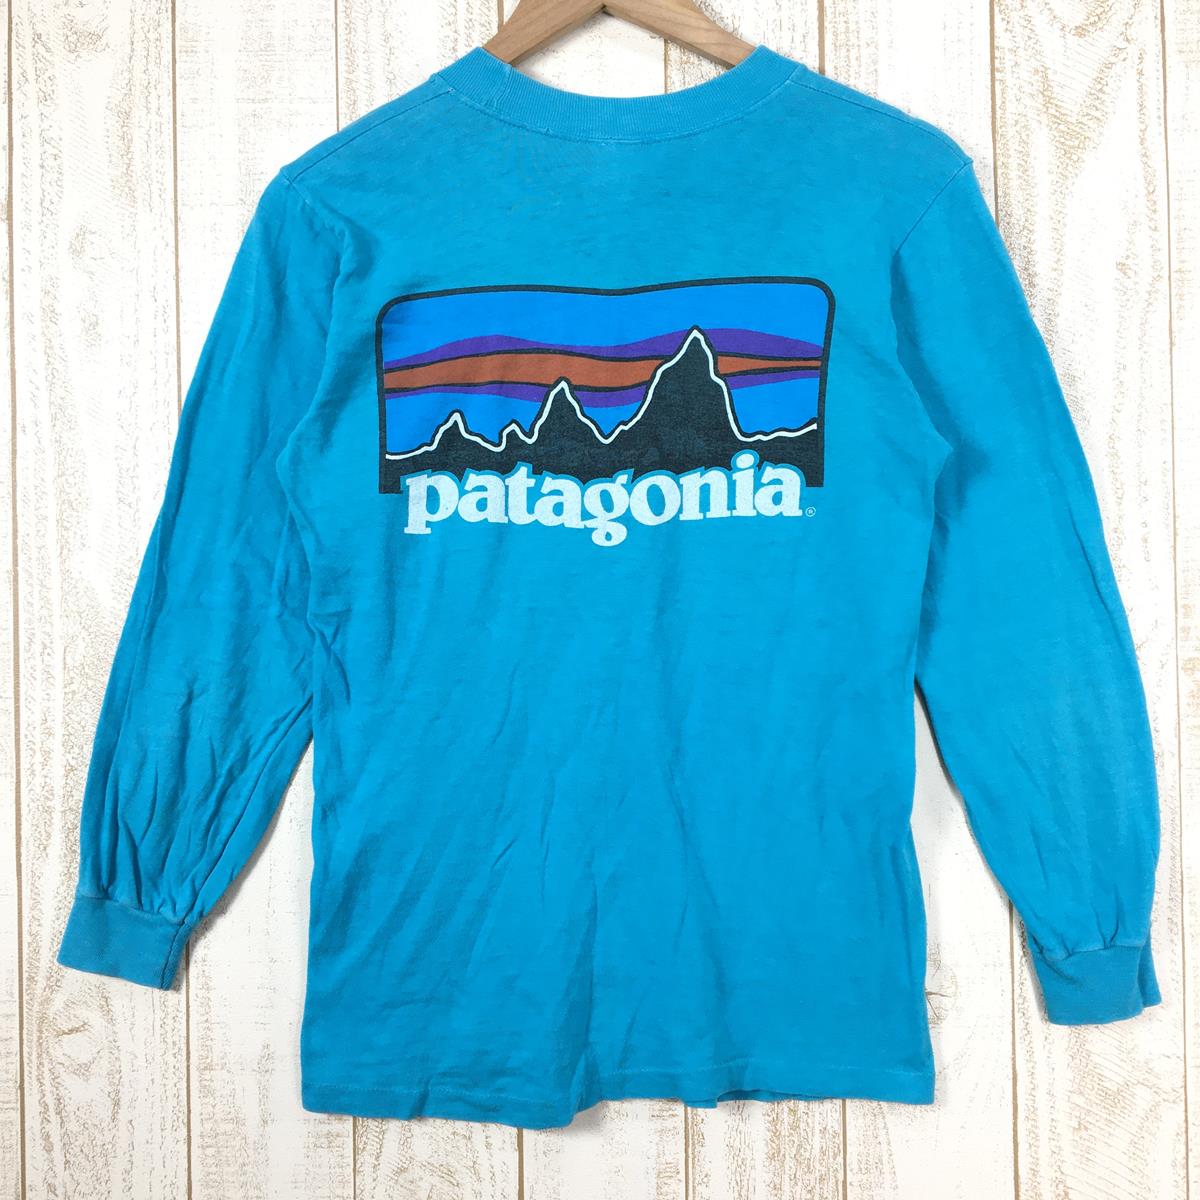 【MEN's S】 パタゴニア 1980s ロングスリーブ バックロゴ ポケット Tシャツ Long Sleeve Back Logo Pocket T-Shirt HI-CRU by stedman アメリカ製 ビンテージ 入手困難 PATAGONIA Turquoise ブルー系